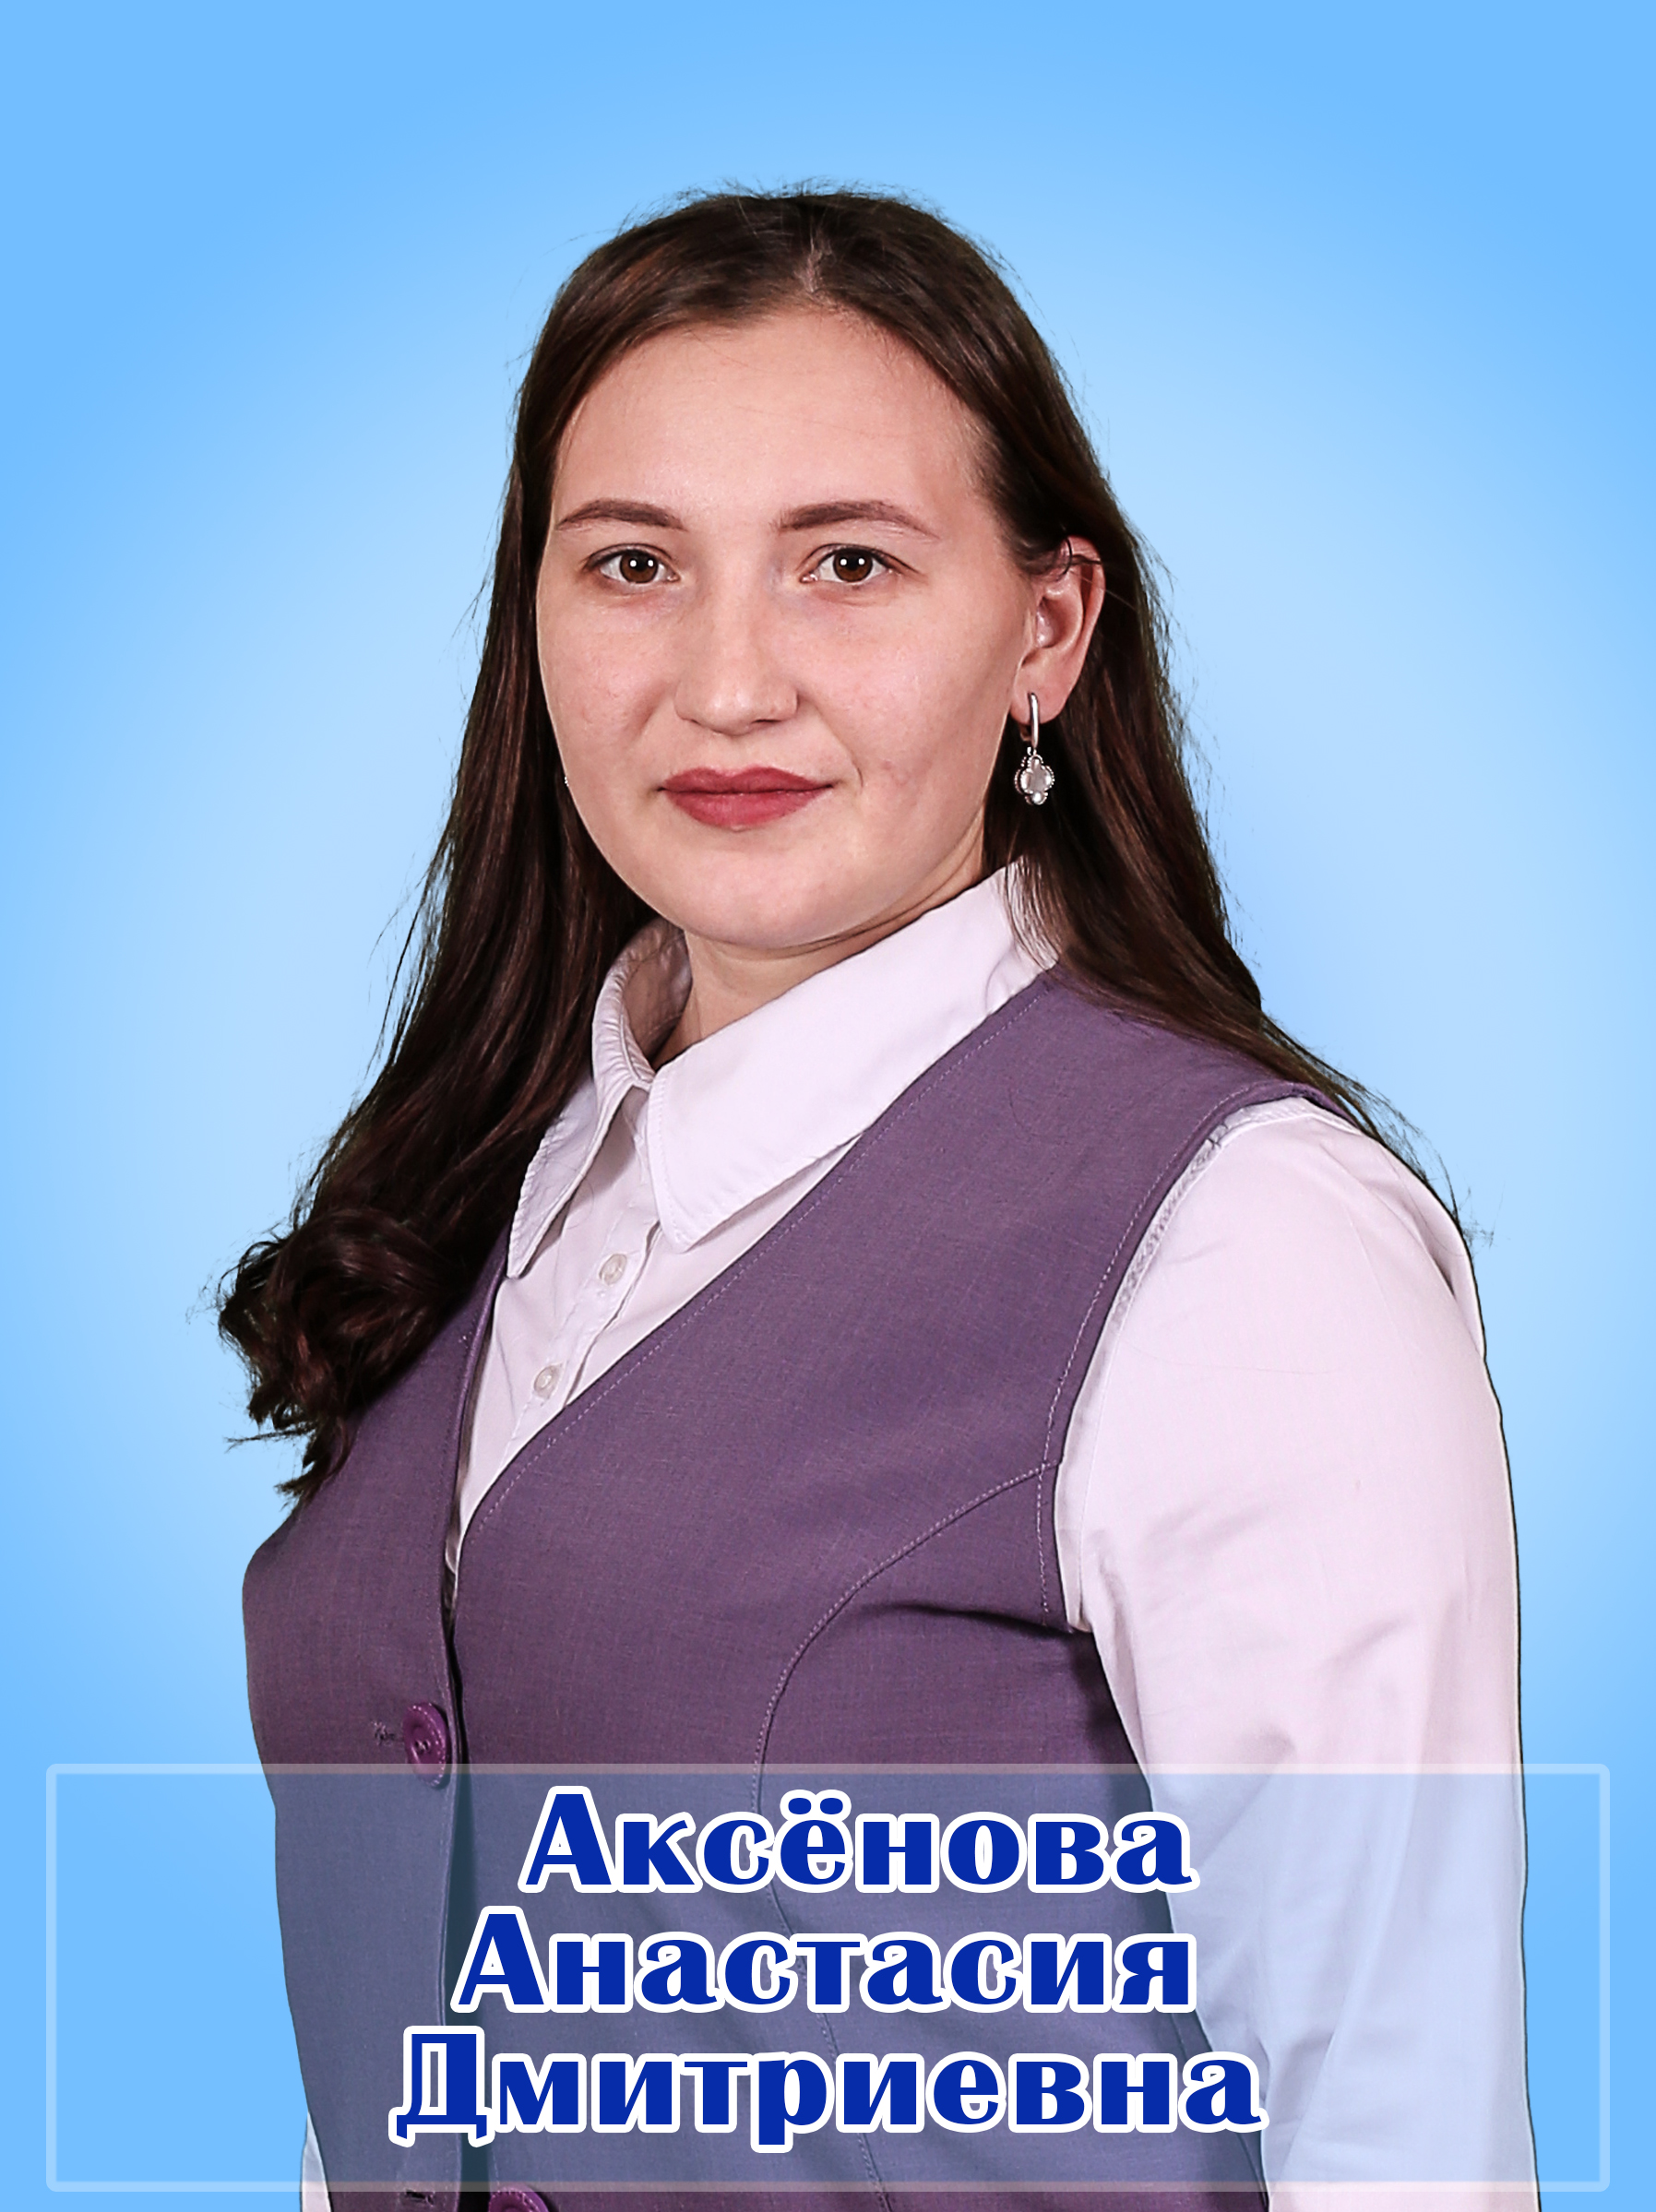 Аксенова Анастасия Дмитриевна.